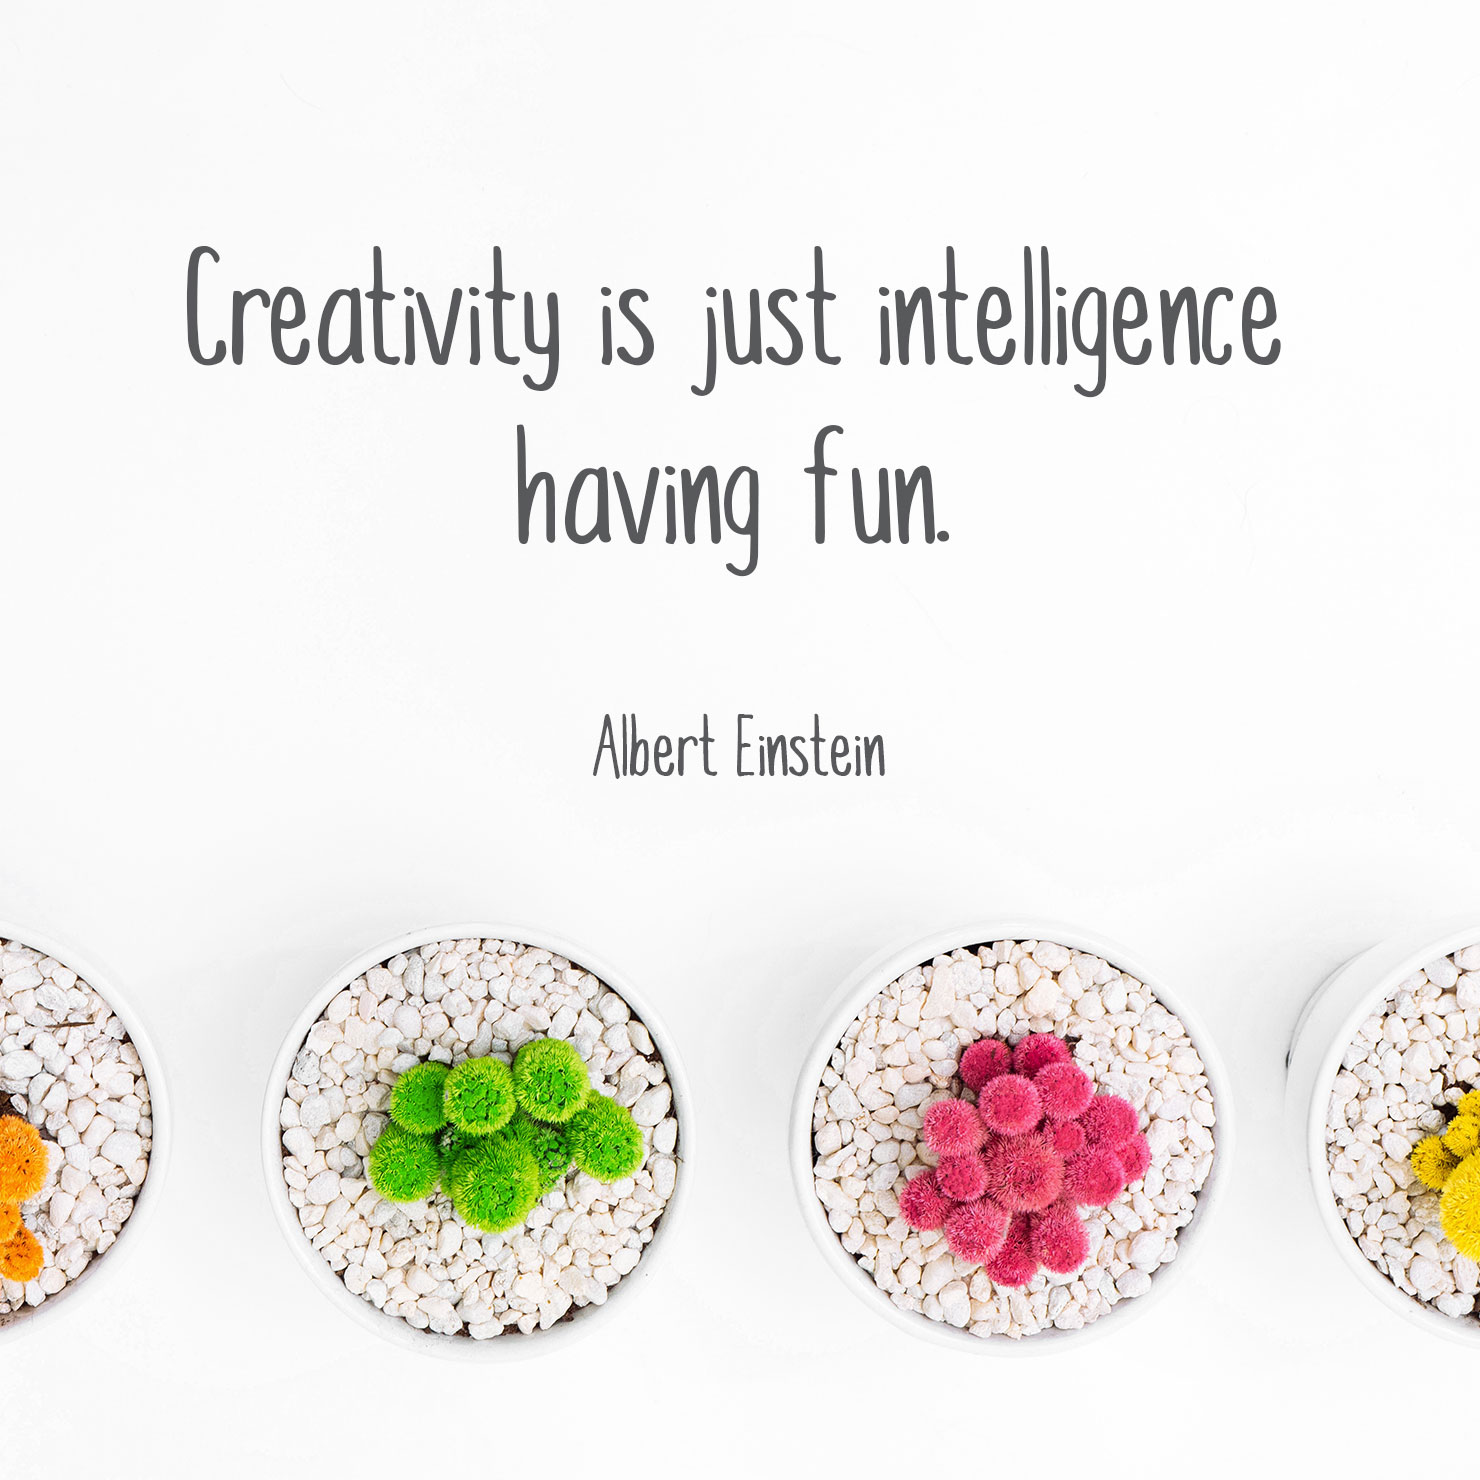 short graduation quote: creativity is just intelligence having fun - Albert Einstein